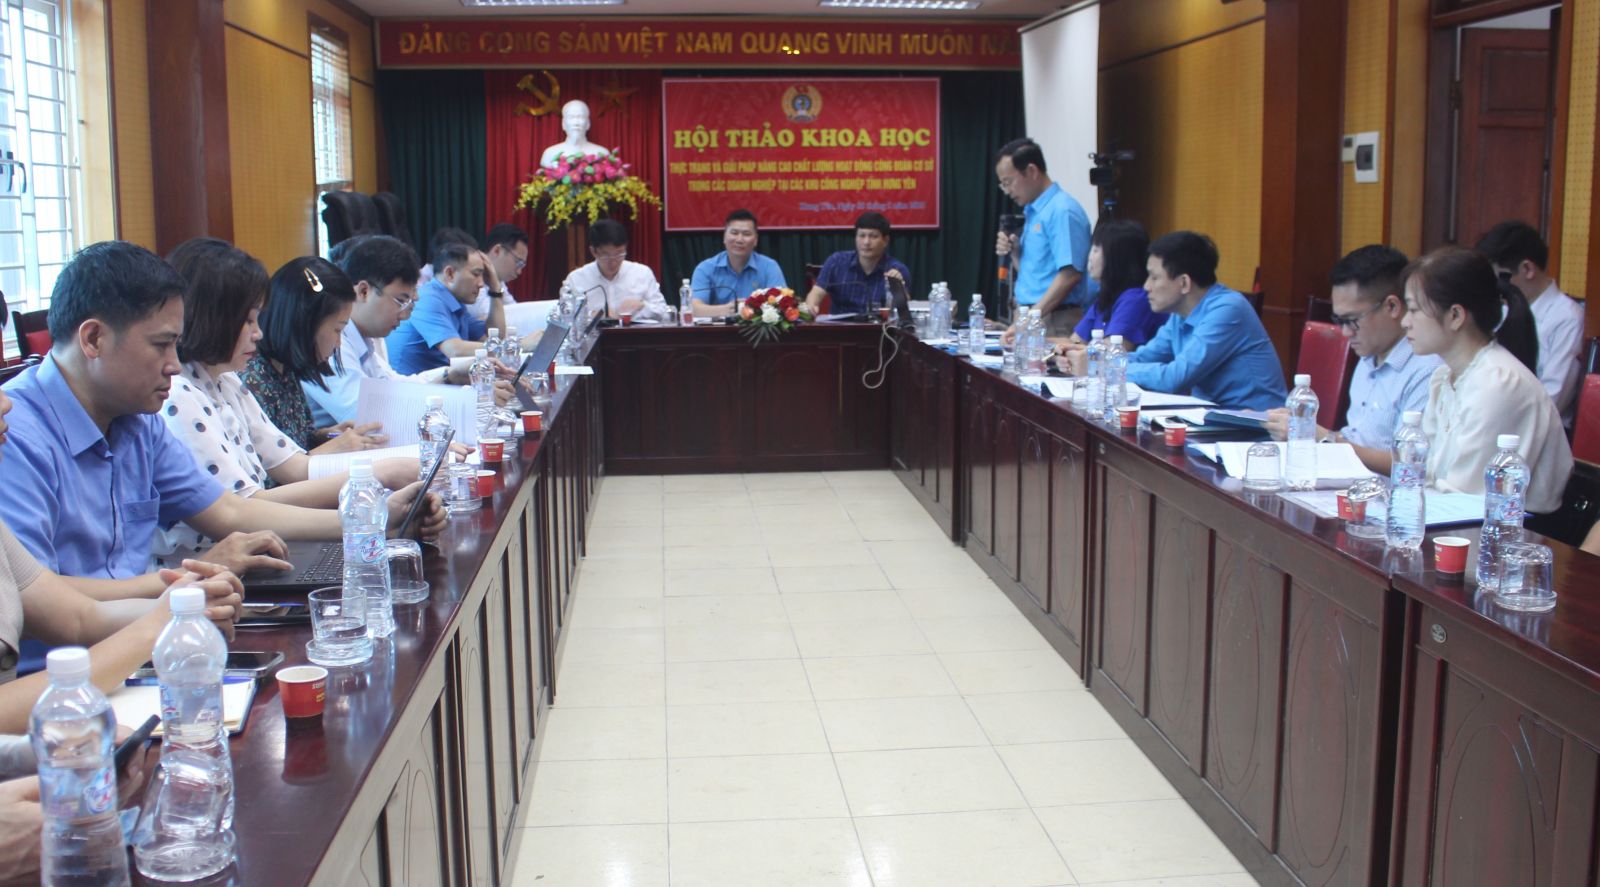 Hội thảo khoa học: “Thực trạng và giải pháp nâng cao chất lượng hoạt động công đoàn cơ sở trong các doanh nghiệp tại các Khu công nghiệp tỉnh Hưng Yên”